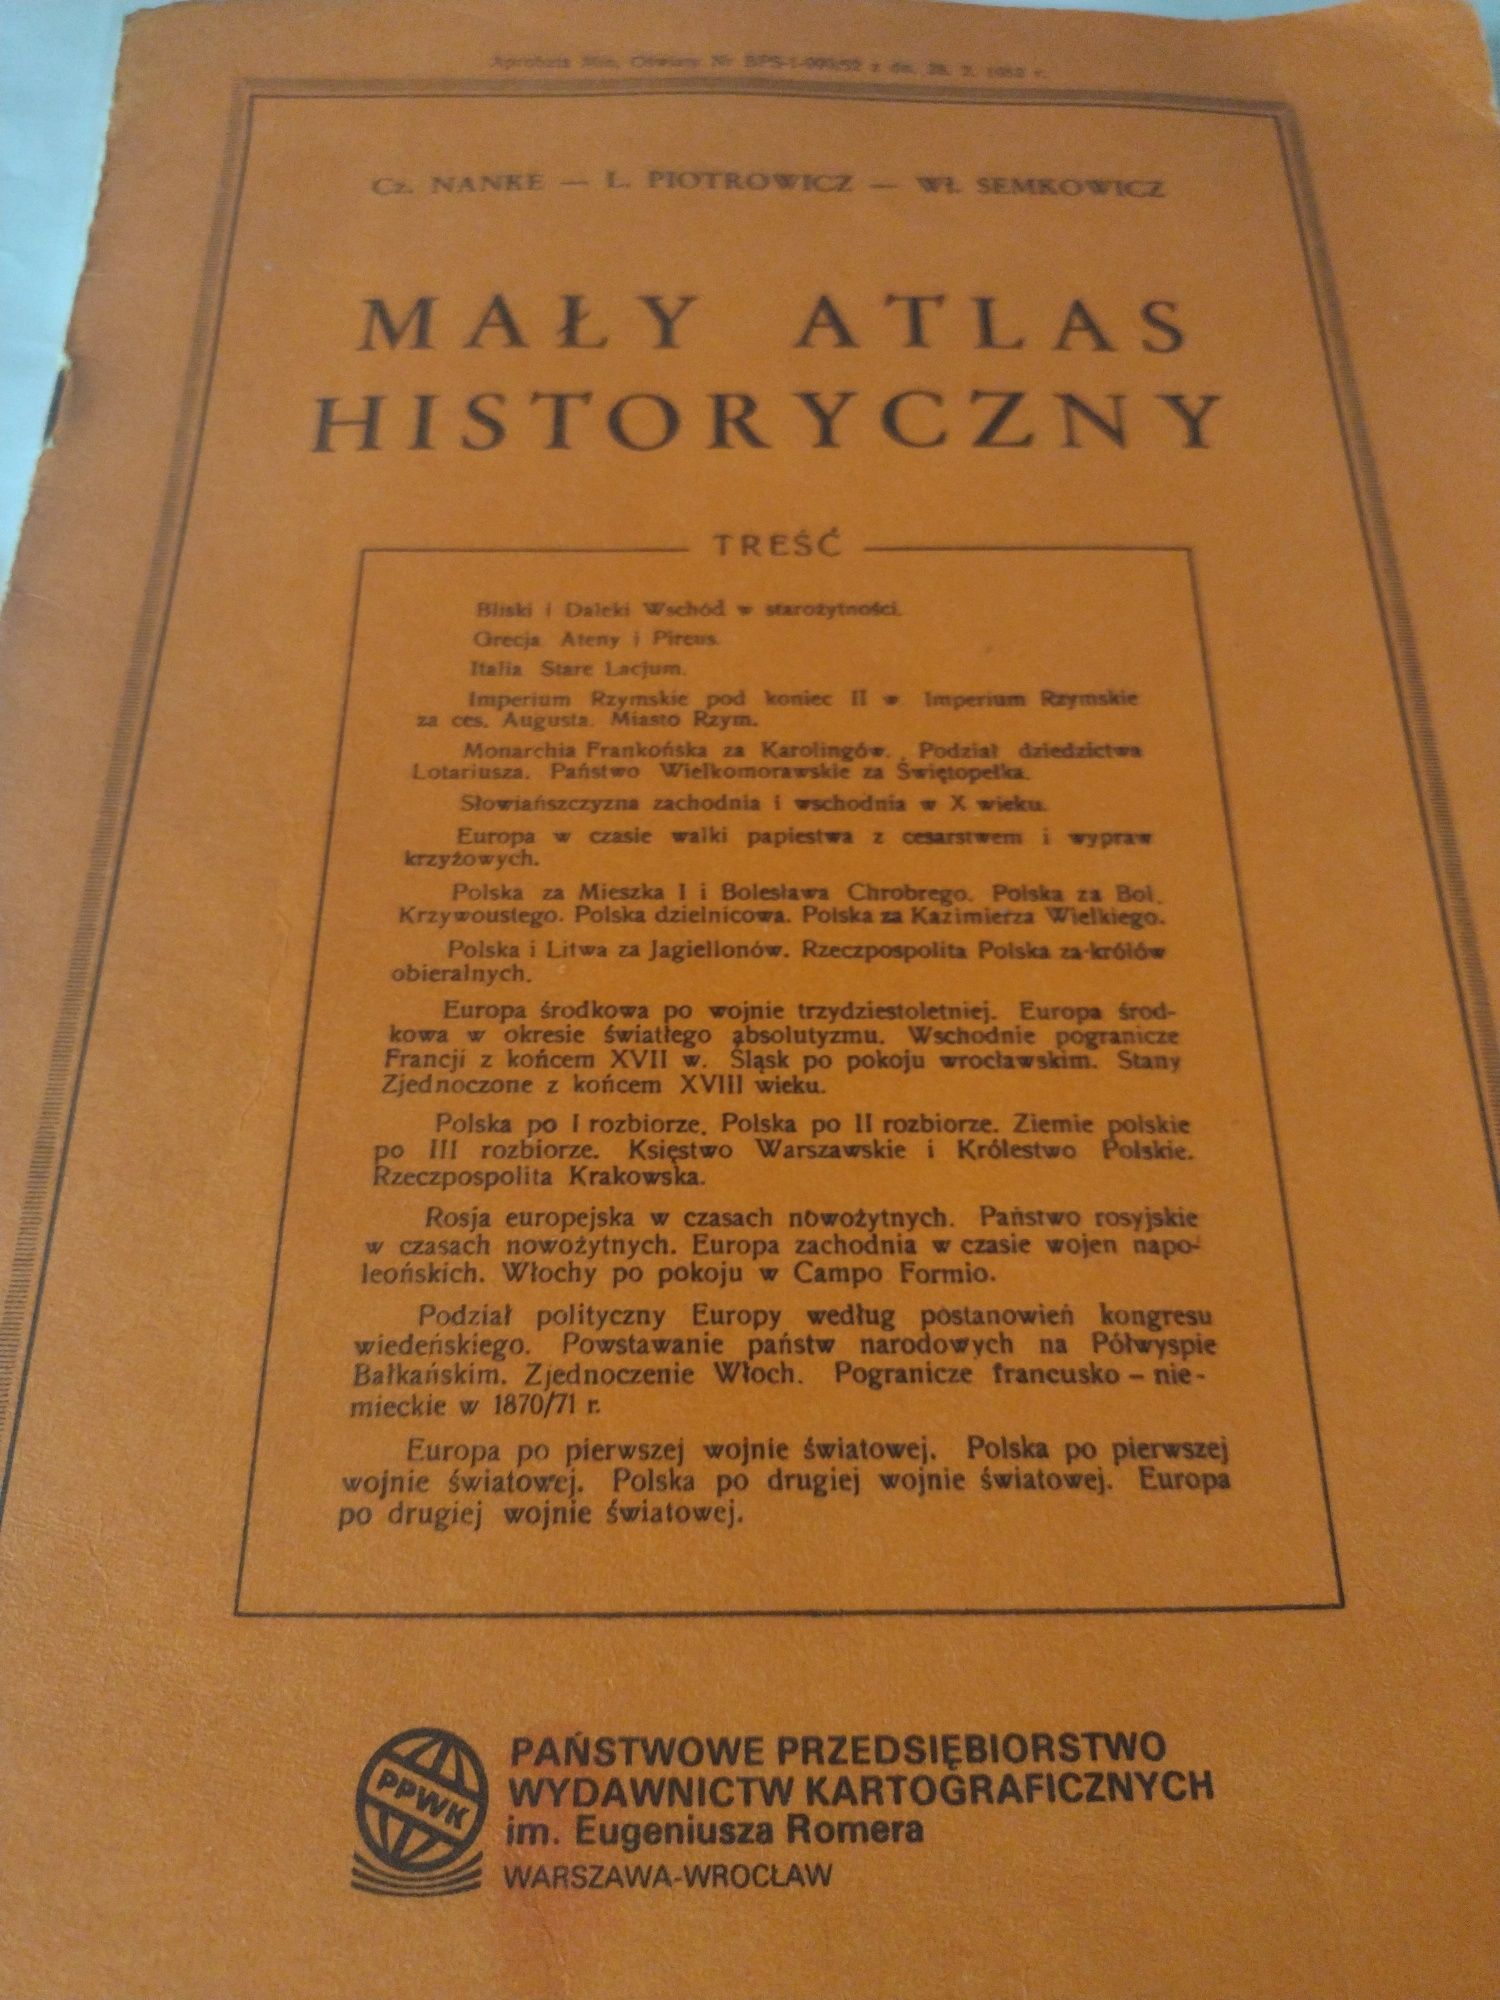 Mały atlas historyczny Nanke Piotrowicz Semkowicz